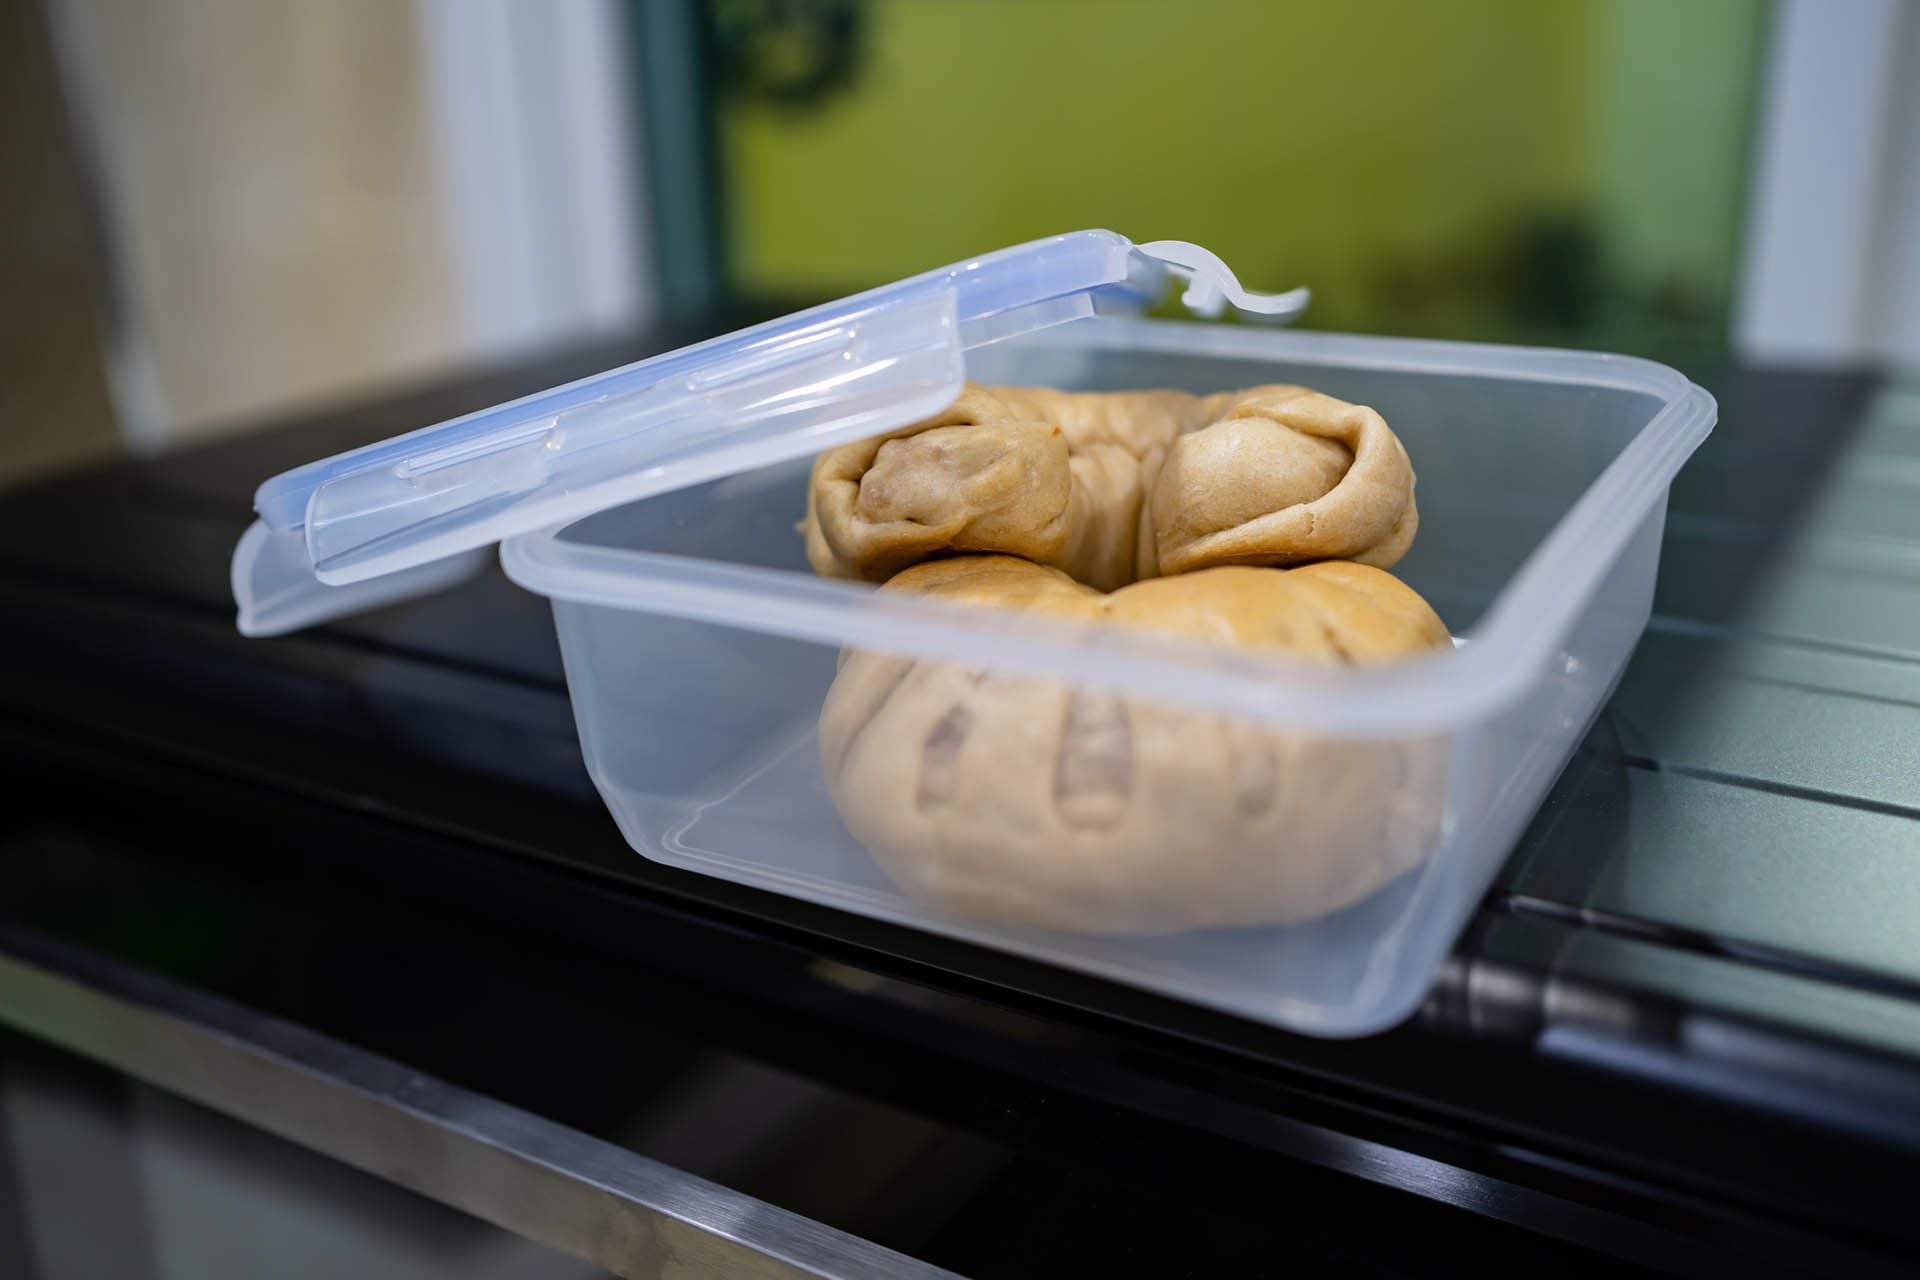 Calentar comida en recipientes de plástico aumenta la presencia del los microplásticos en el organismo (Infobae/Archivo)